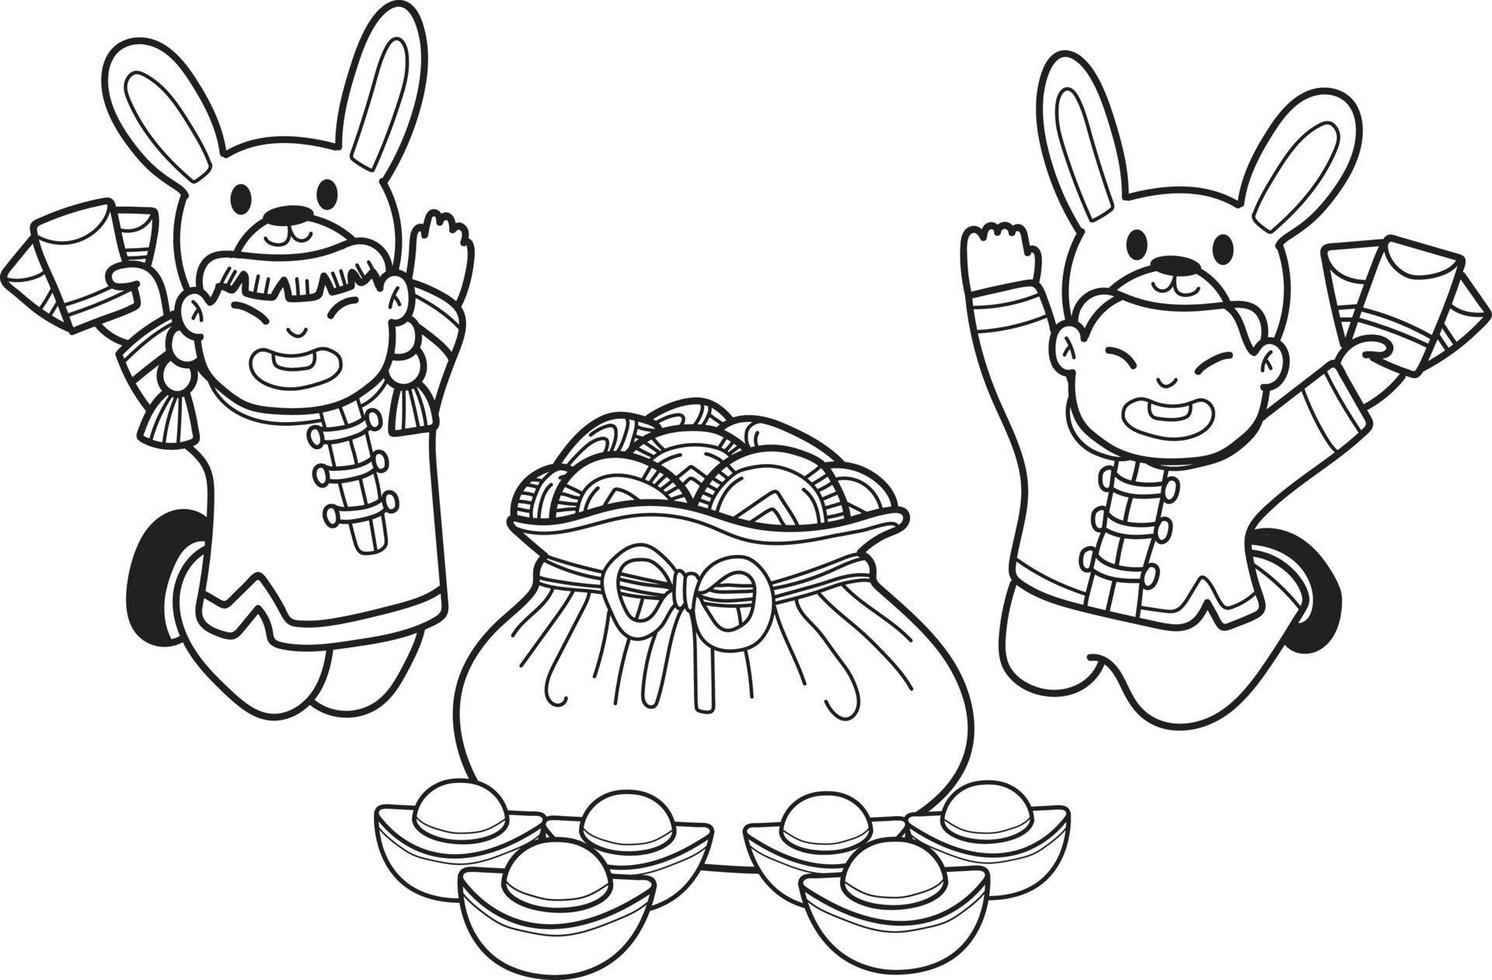 enfant chinois dessiné à la main portant un chapeau de lapin et une illustration de sac d'argent vecteur